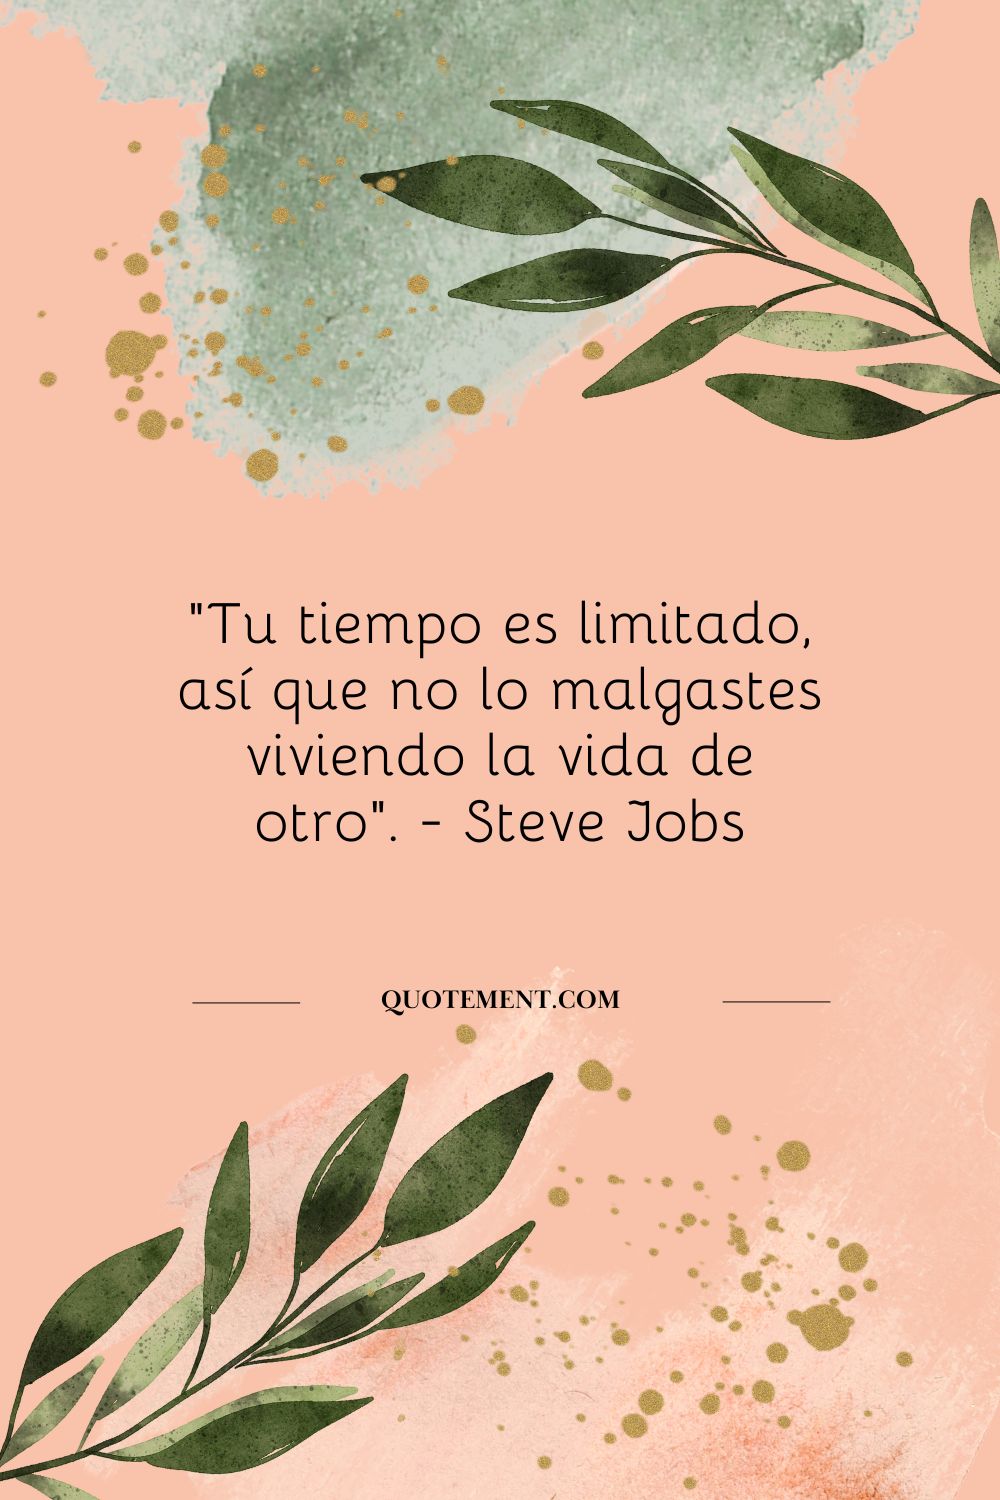 "Tu tiempo es limitado, así que no lo malgastes viviendo la vida de otra persona". - Steve Jobs